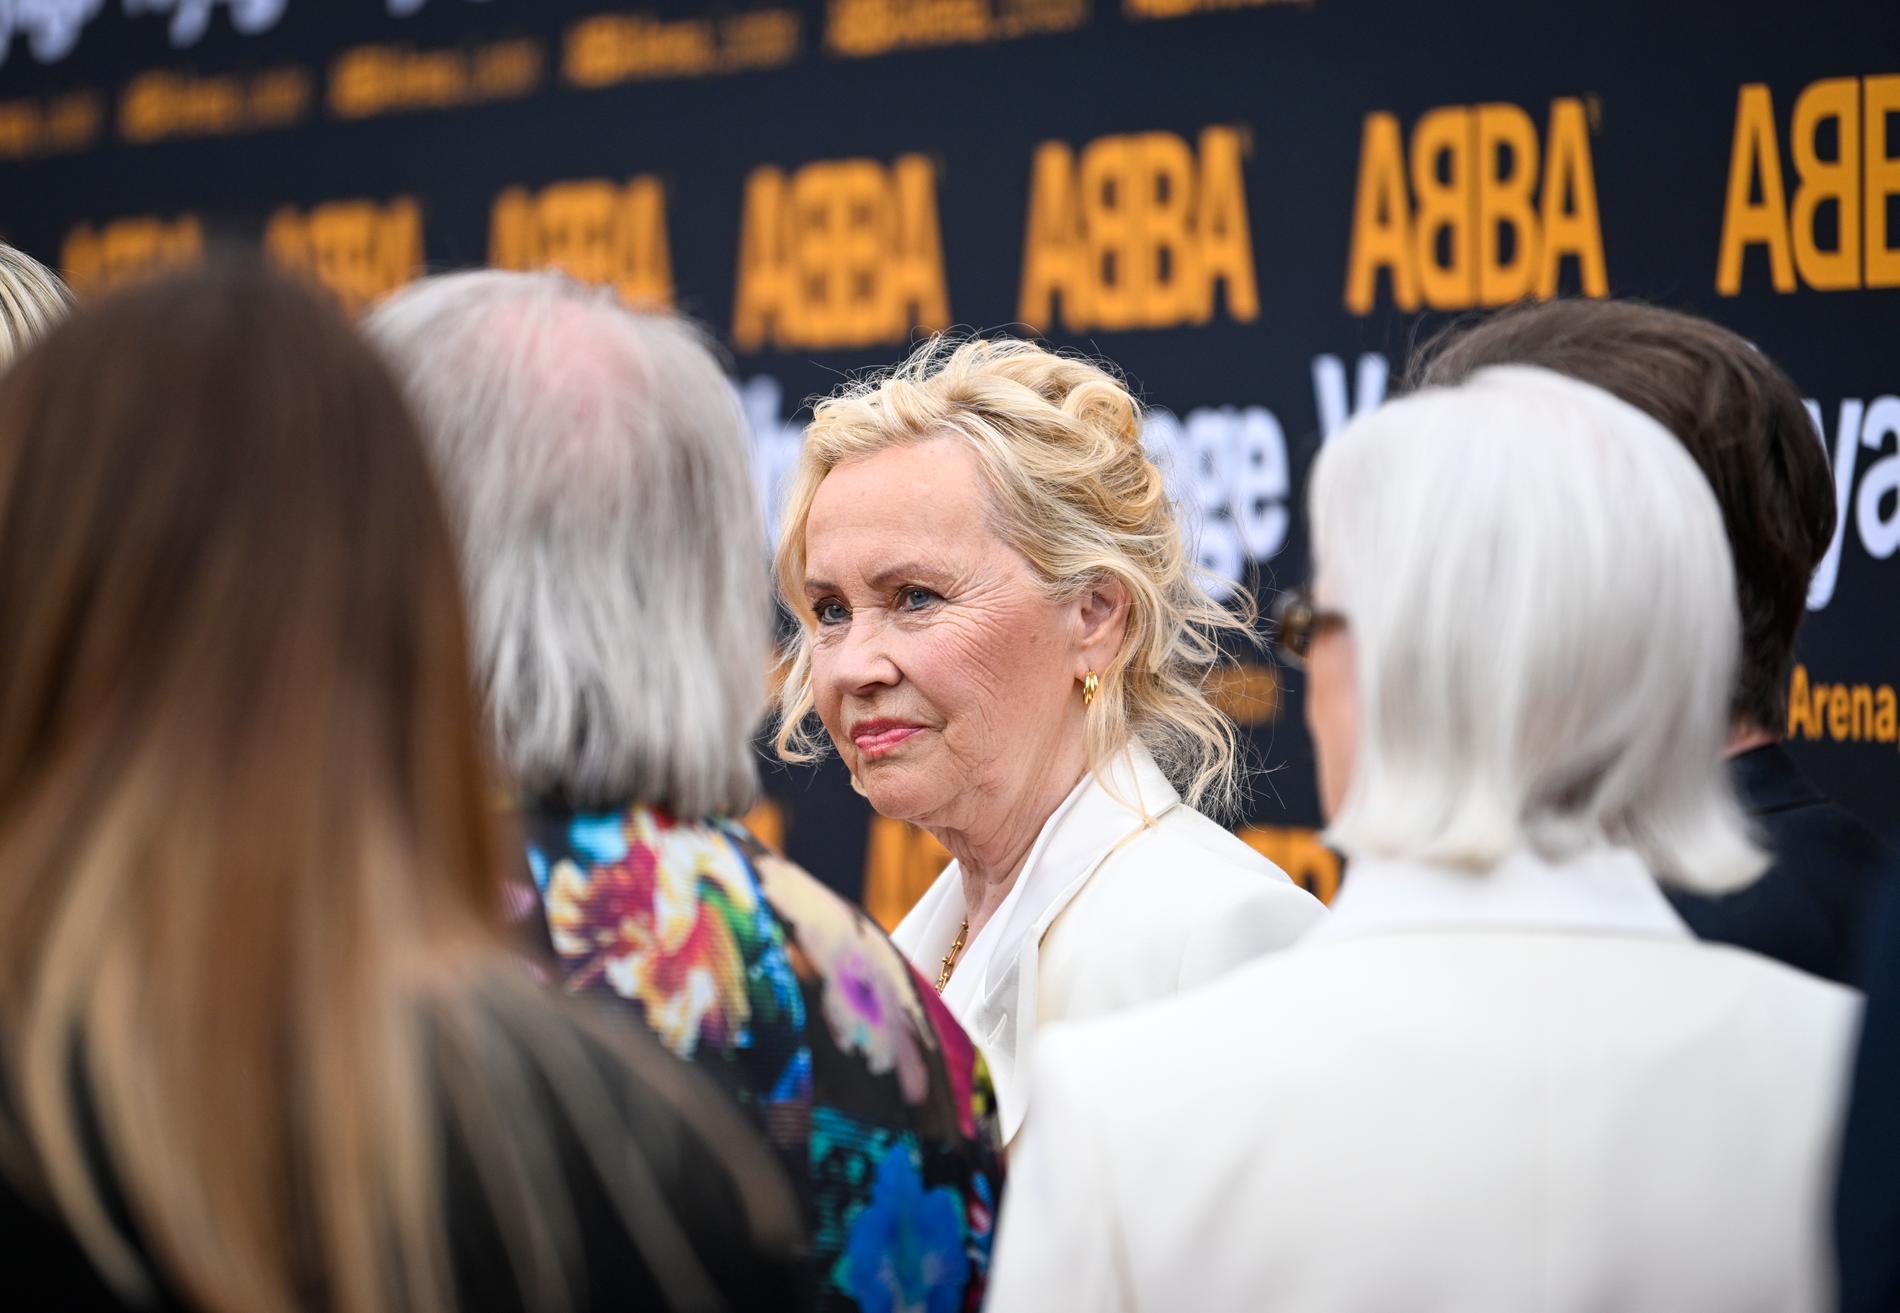 Agnetha Fältskog och Anni-Frid Lyngstad anländer på röda mattan till ABBA Arena.